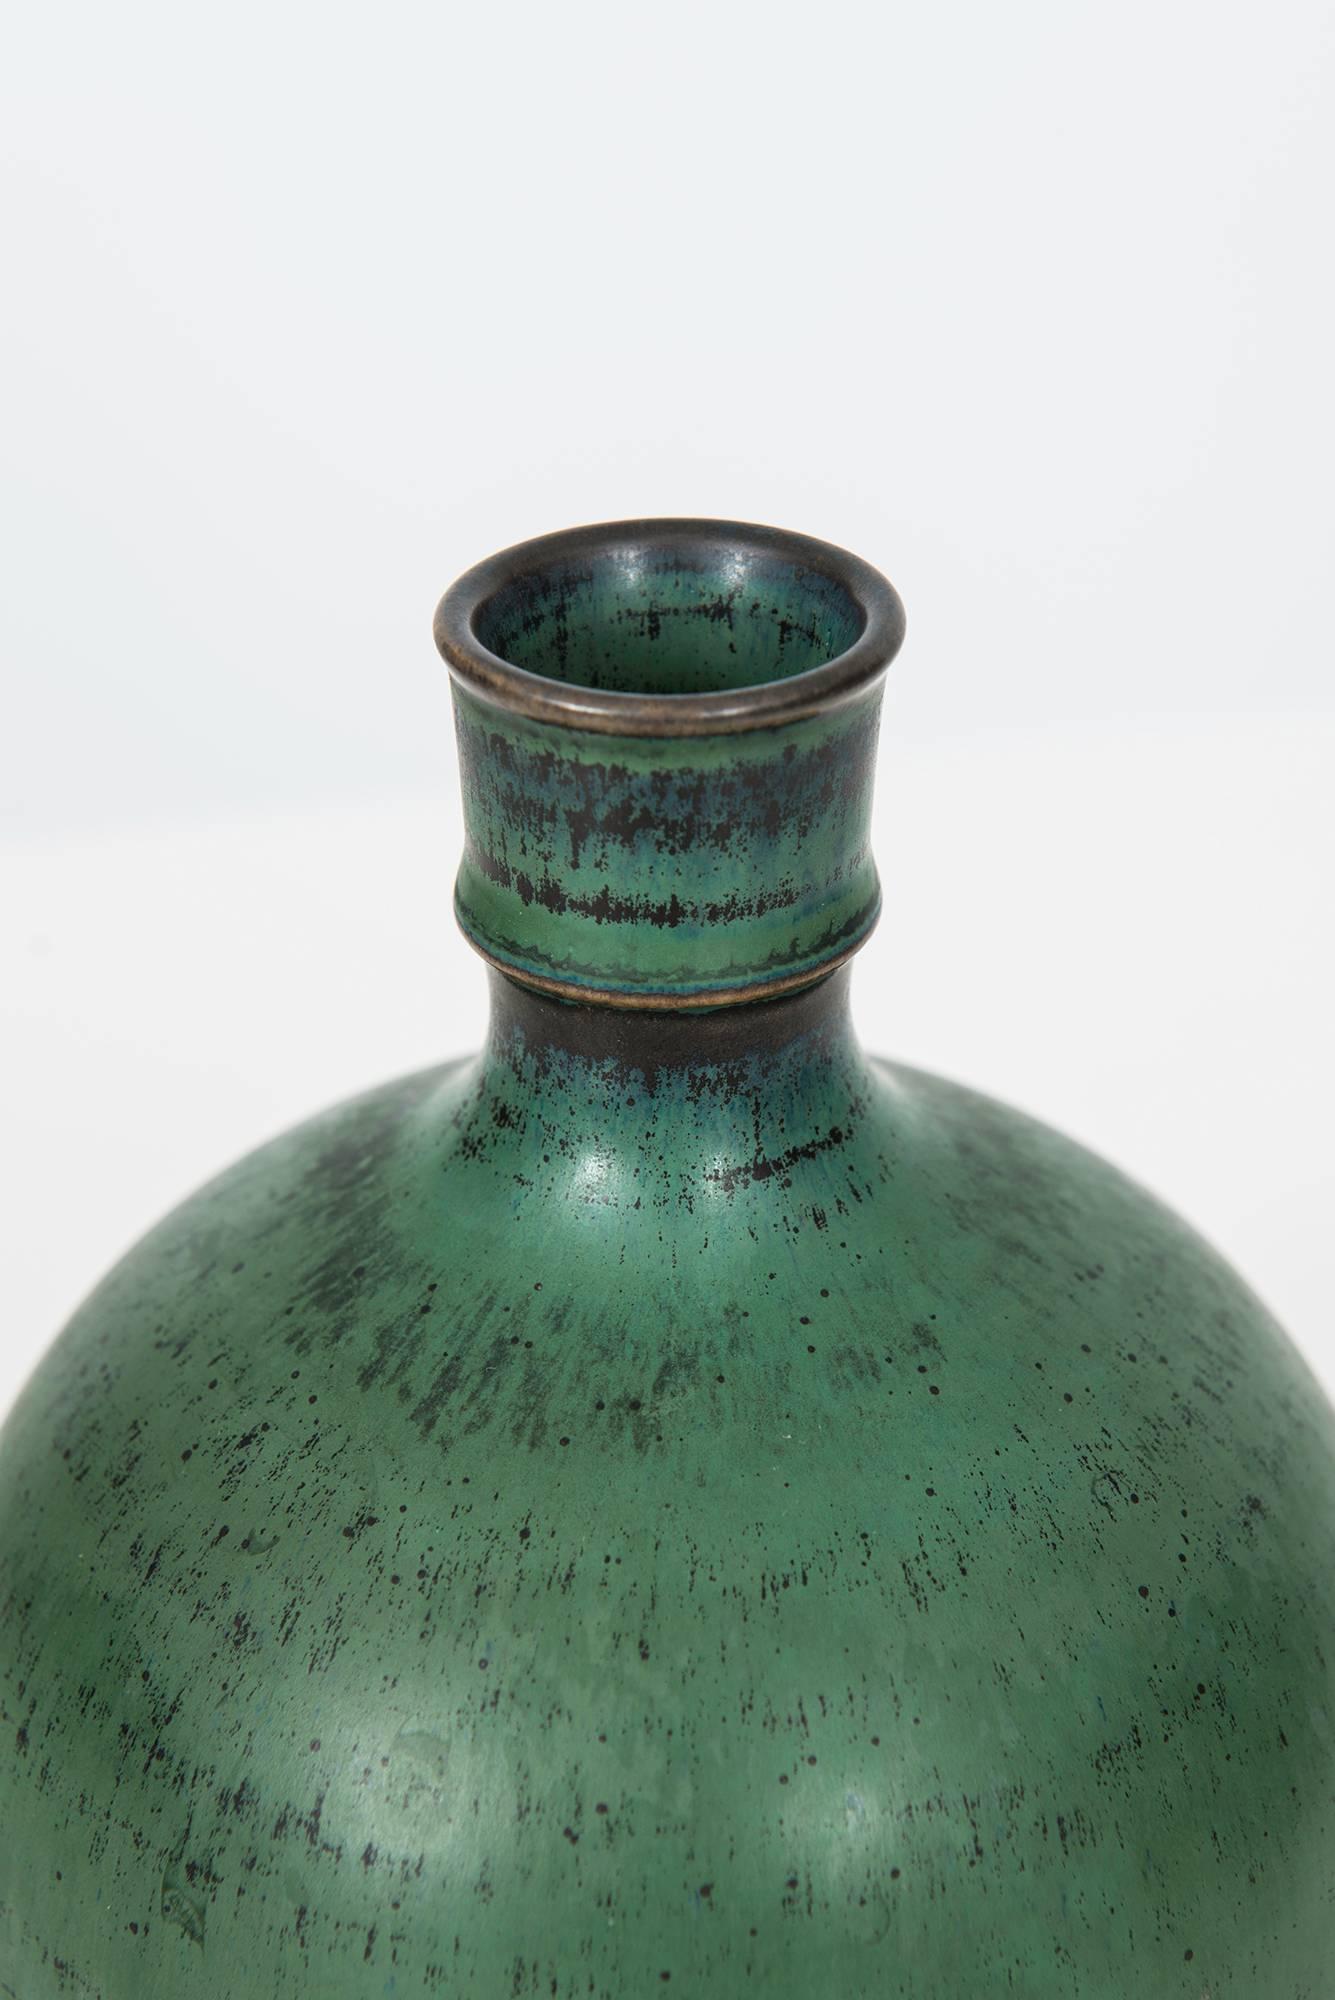 Ceramic vase designed by Stig Lindberg. Produced in Sweden. 